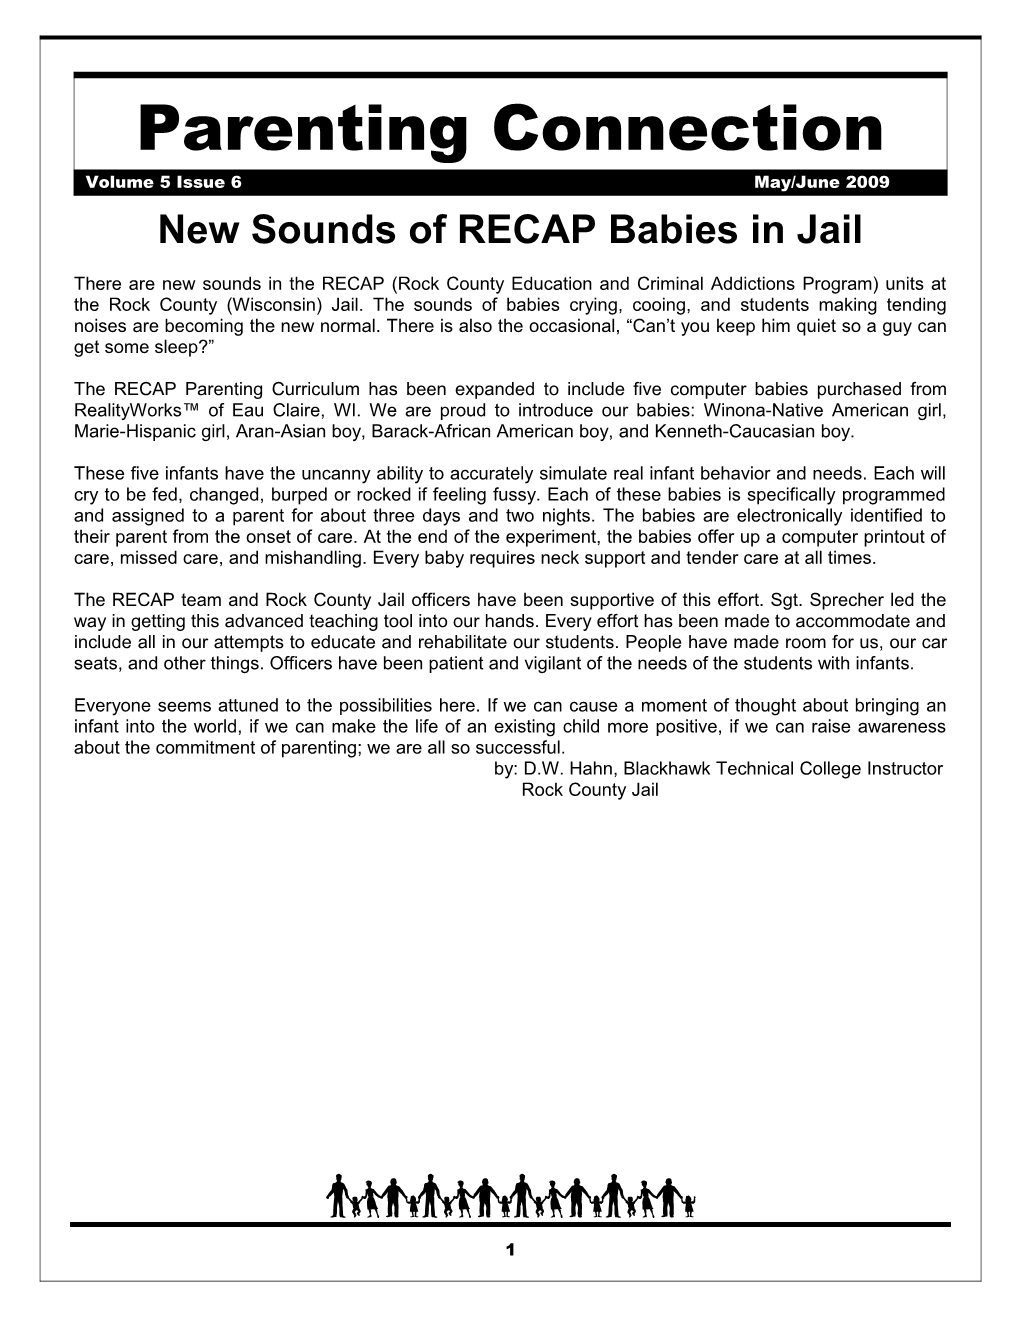 New Sounds of RECAP Babies in Jail